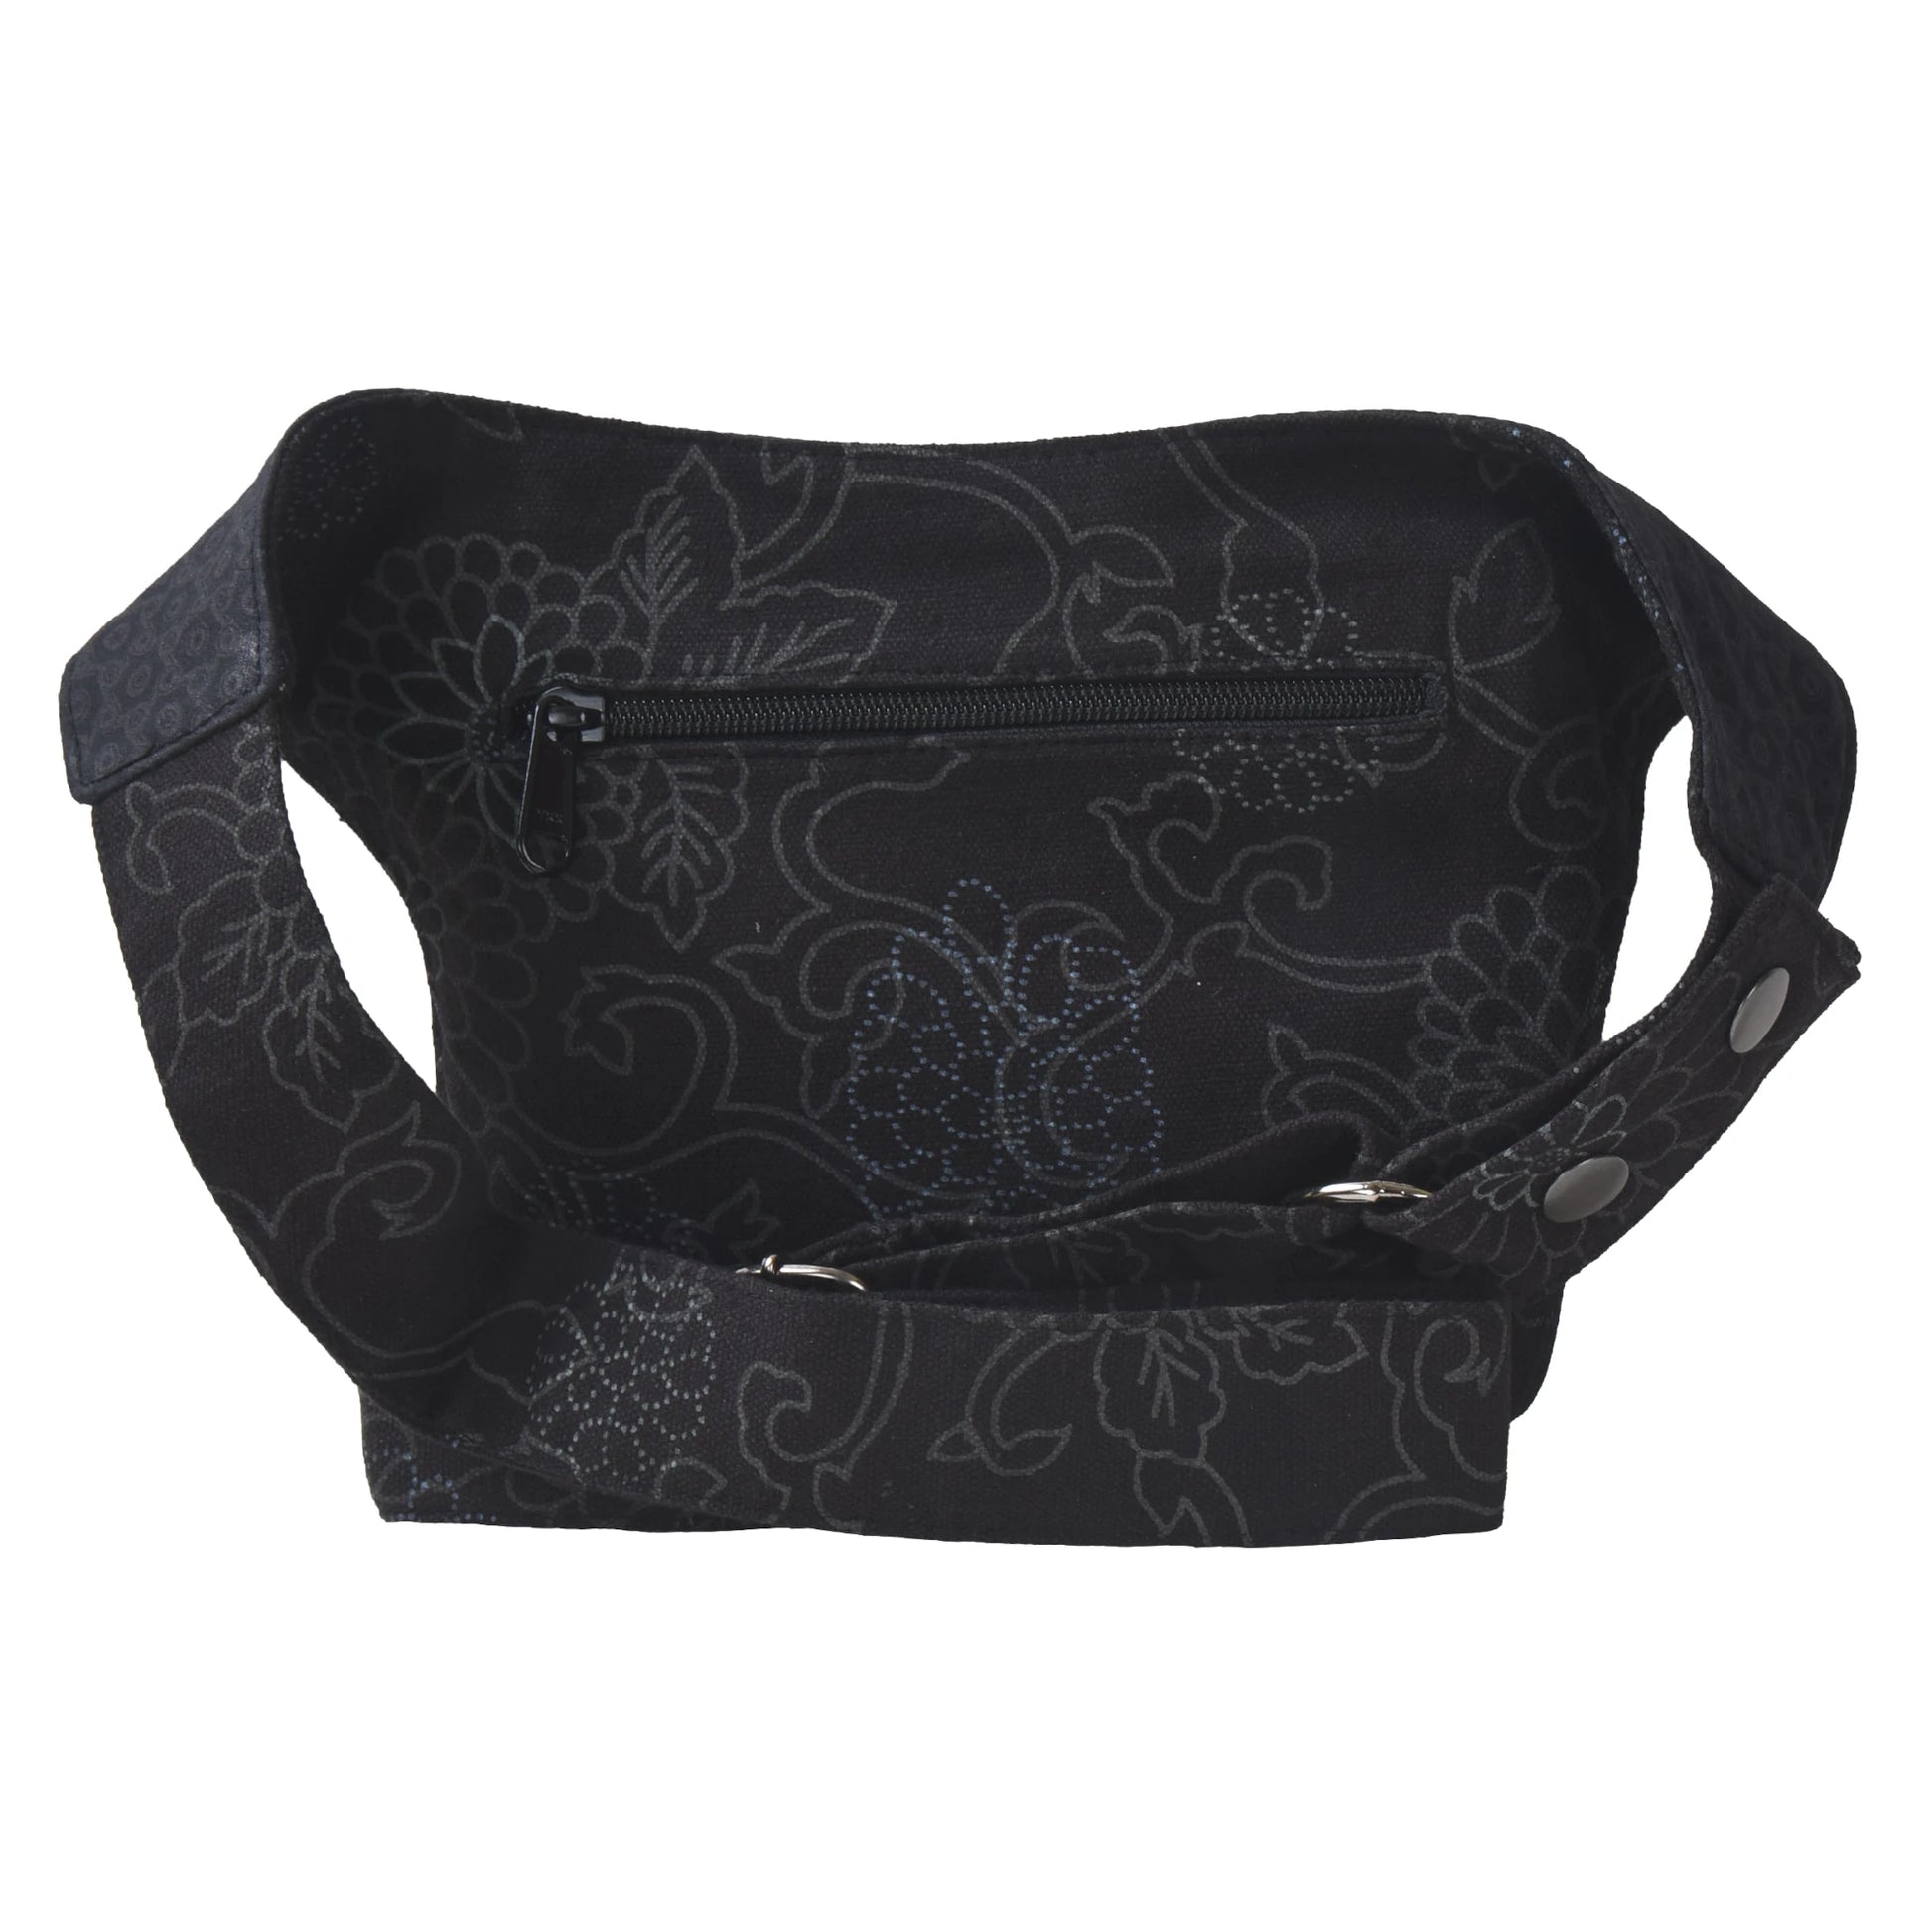 Bauchtasche Schwarz aus Stoff mit floralem Muster, größenverstellbarer Hüftgurt und hinterem Reißverschlussfach.